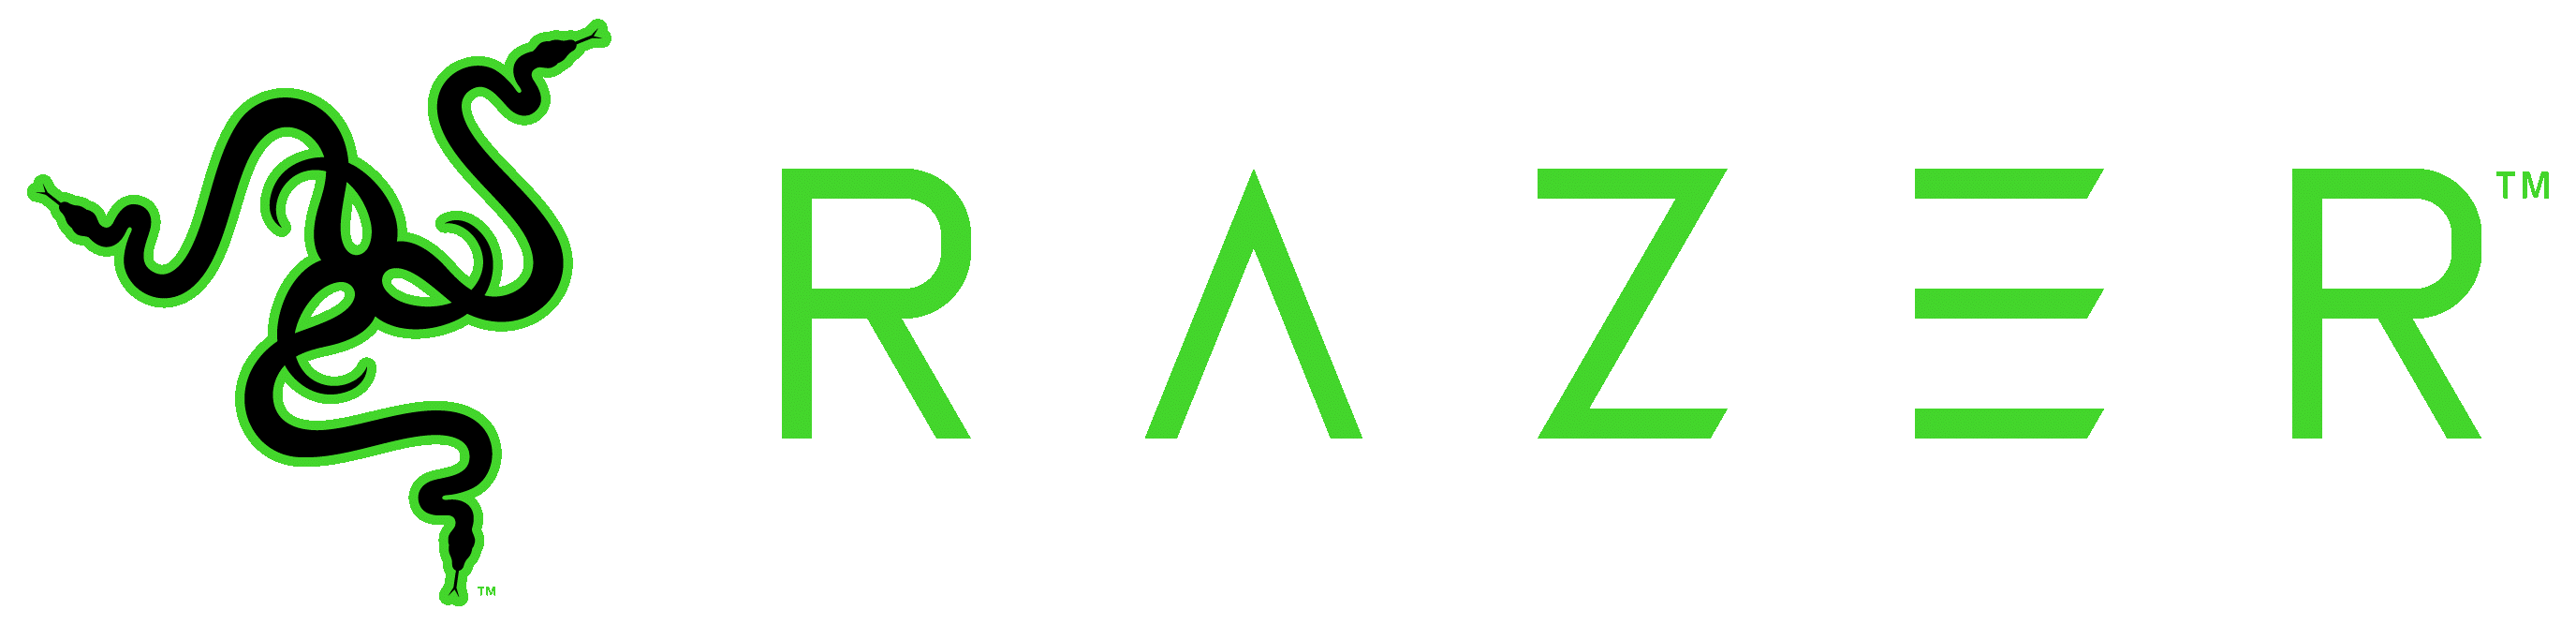 Емблема Razer.